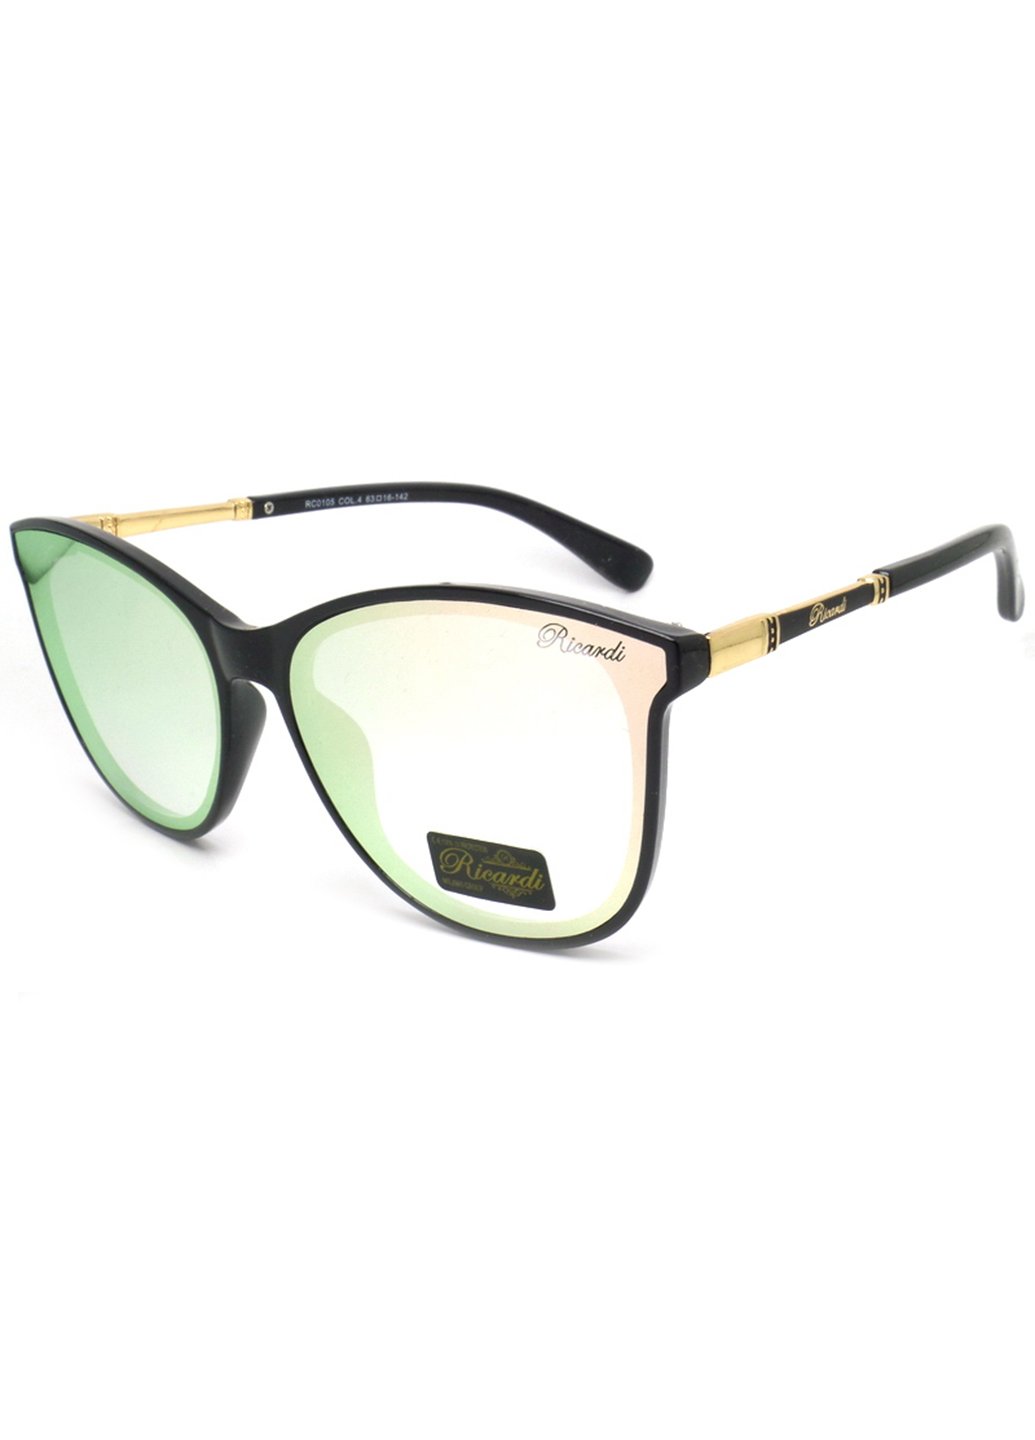 Купить Женские солнцезащитные очки Ricardi RC0105 110037 - Зелёный в интернет-магазине